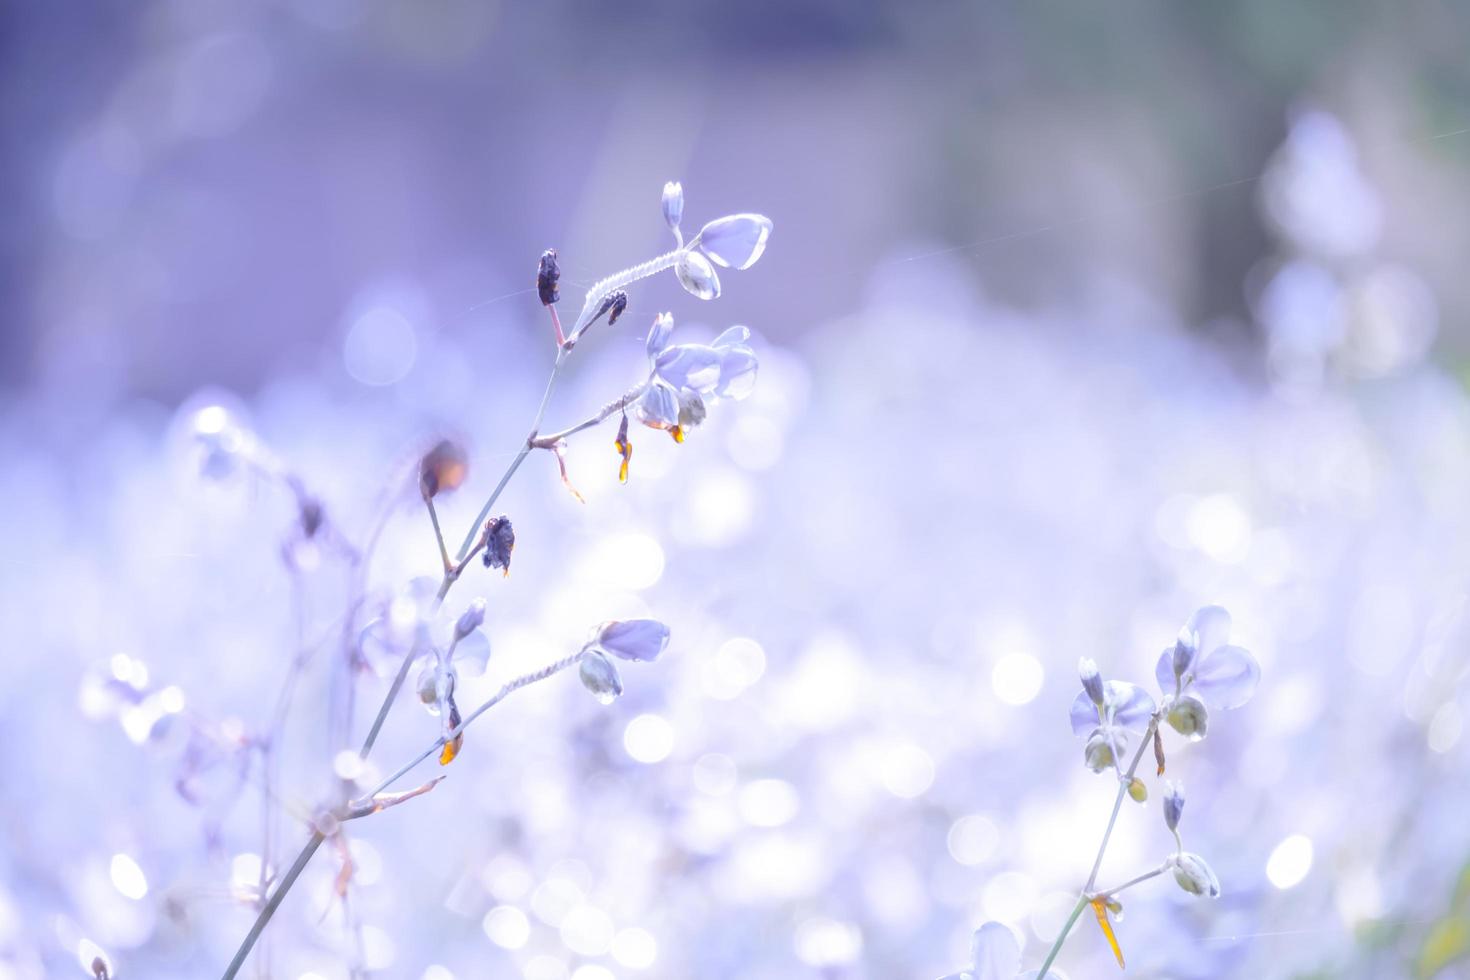 flor de flor borrosa, púrpura en el campo. hermoso crecimiento y flores en el prado que florece en la mañana, naturaleza de enfoque selectivo en el fondo del bokeh, estilo vintage foto